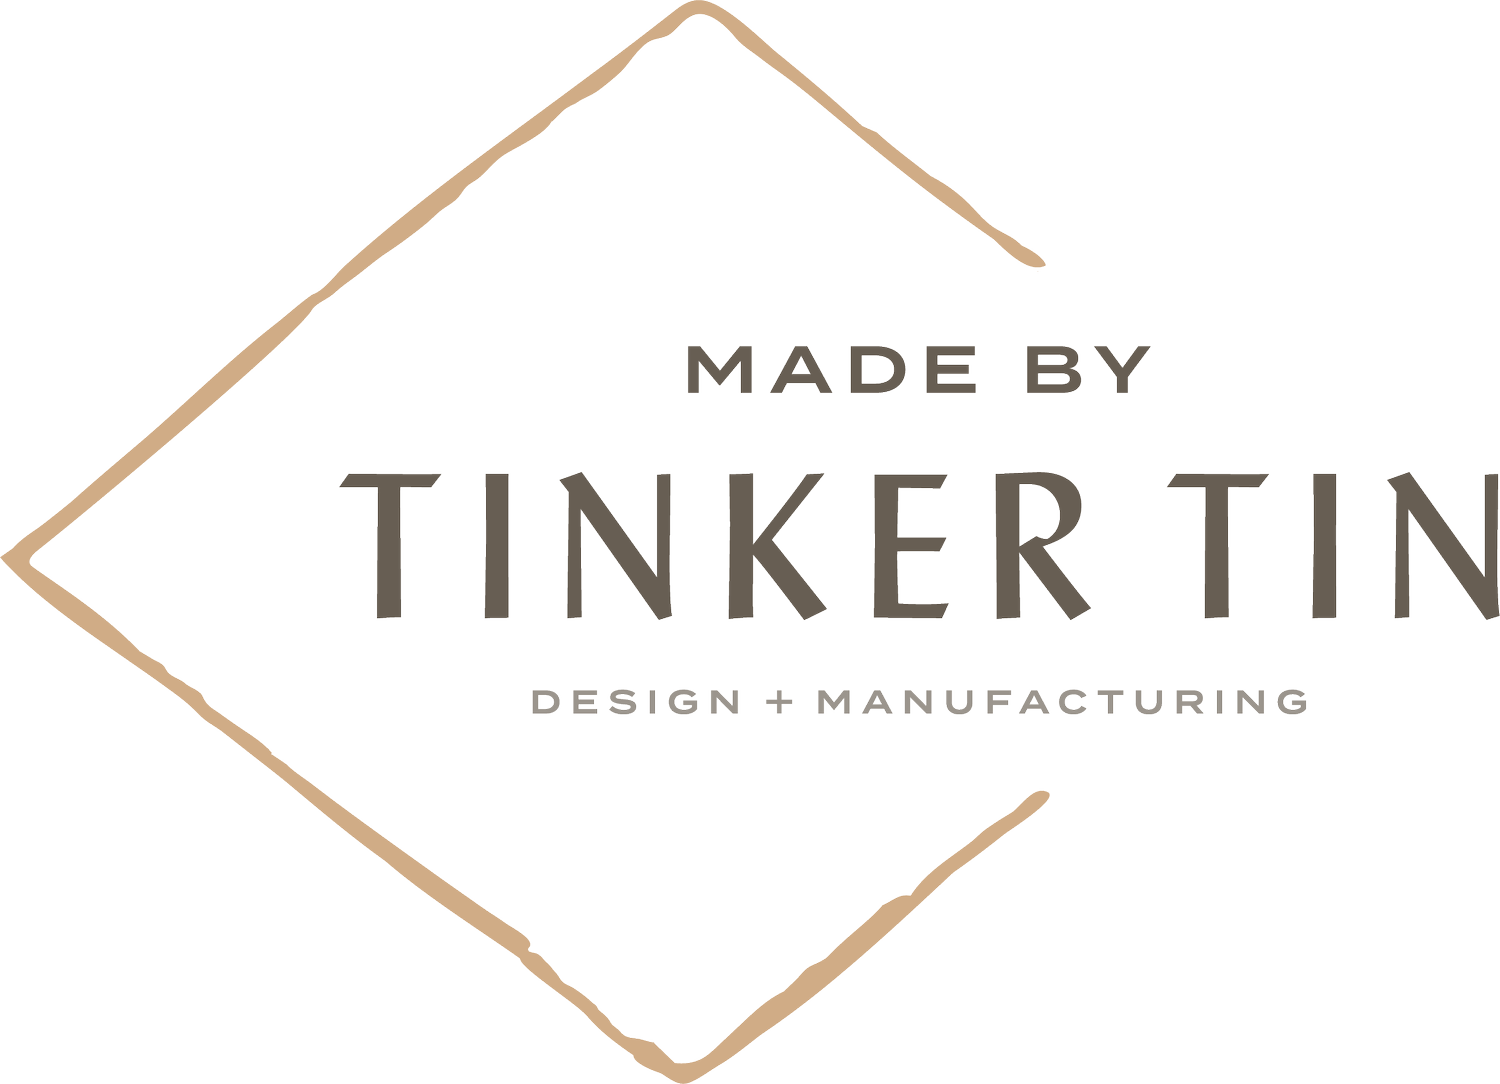 Tinker Tin Company